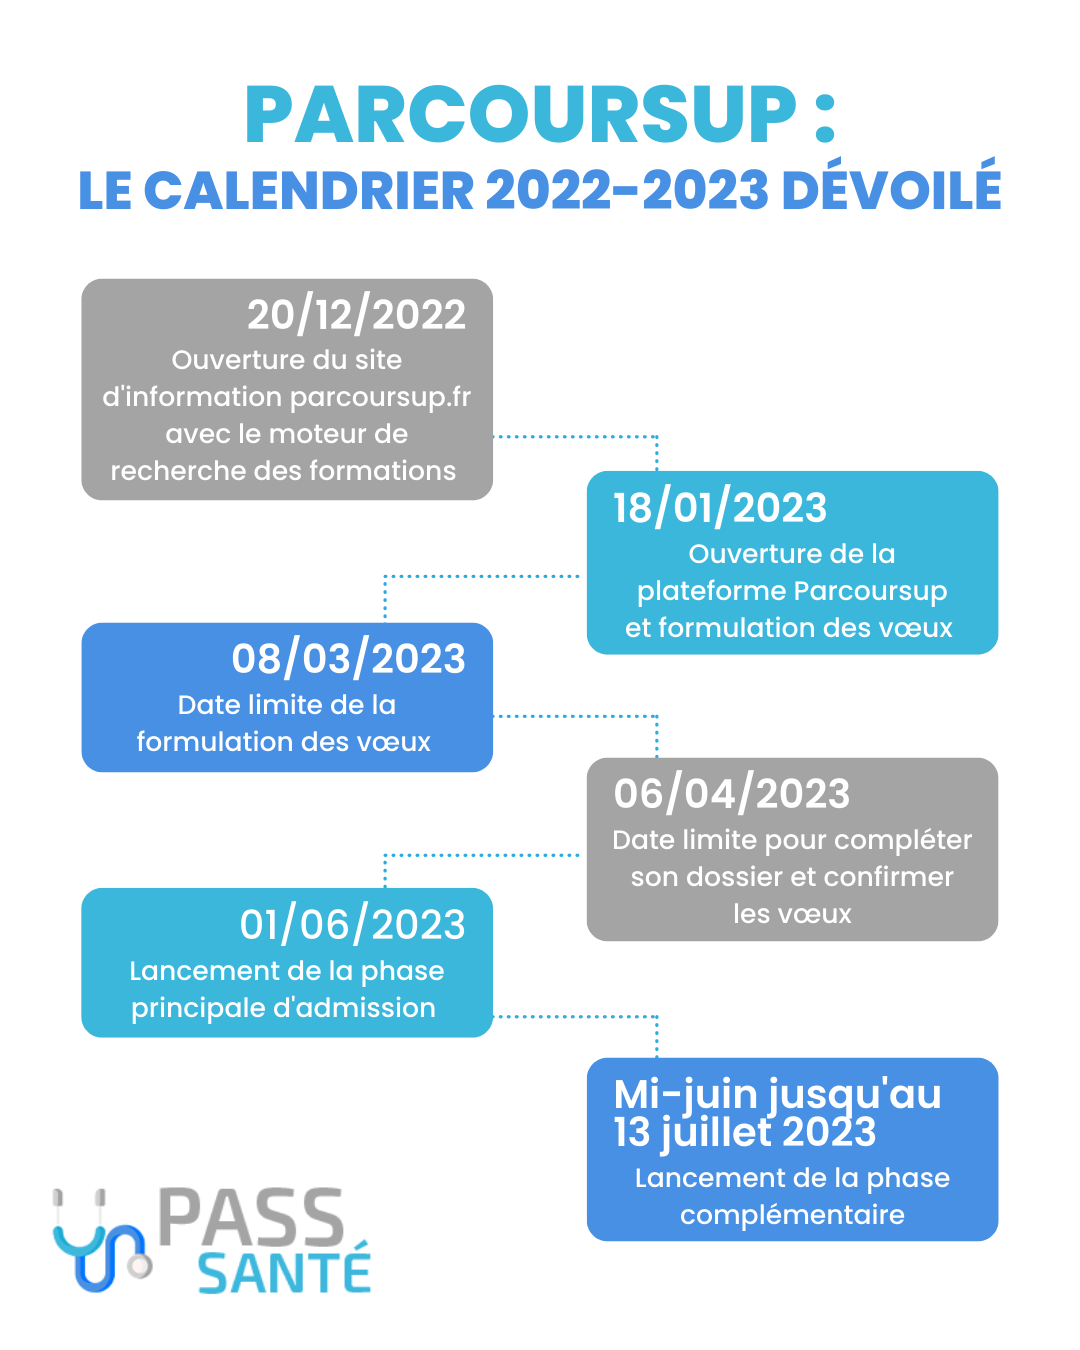 Calendrier 2022 2023 parcoursup dates clés